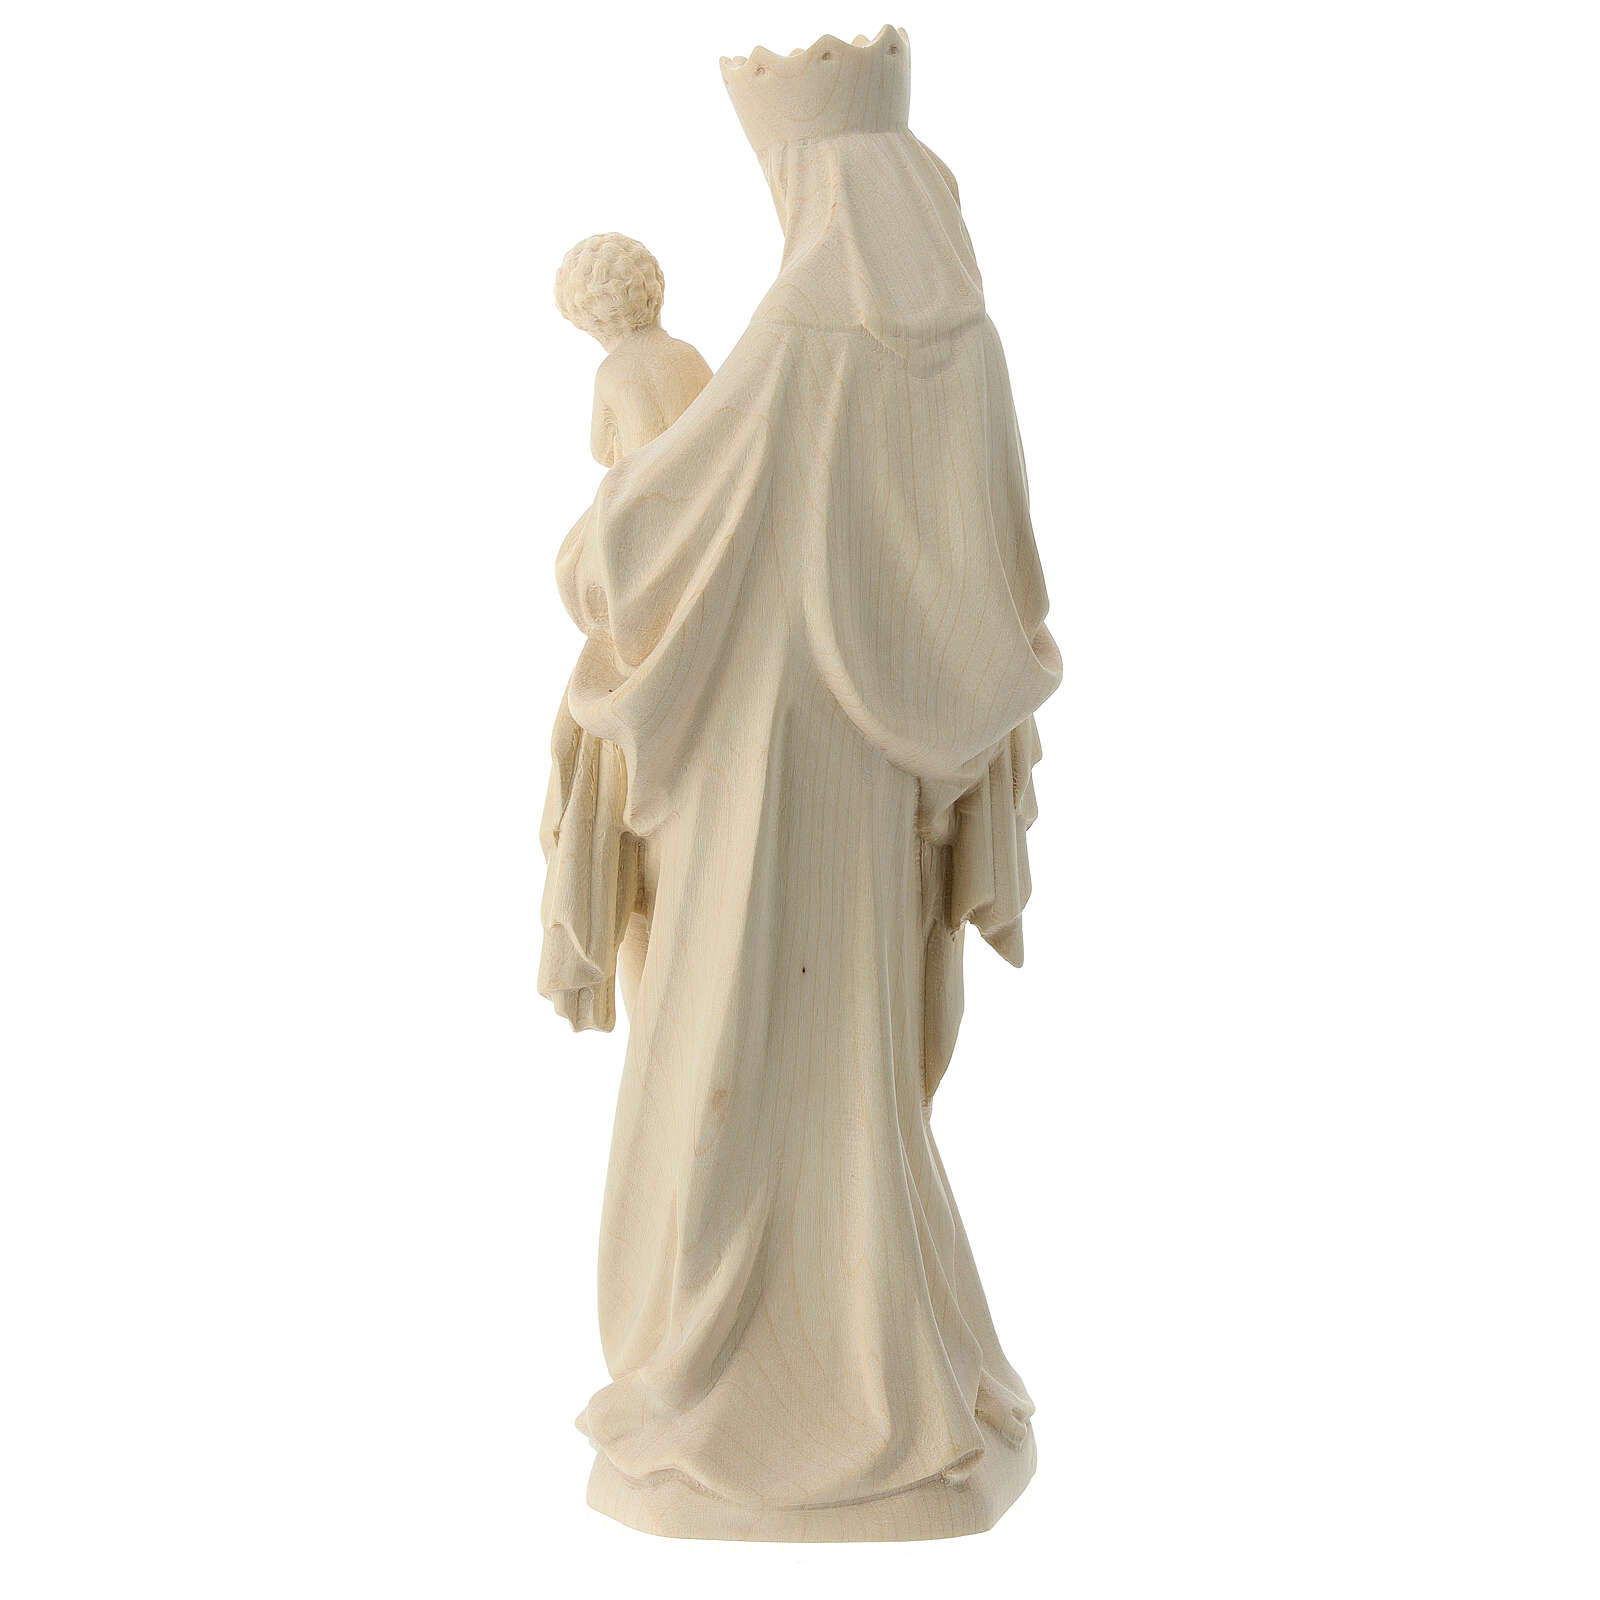 Maria Guadalupe 12 CM plastique figurine statue s/150 Madonna